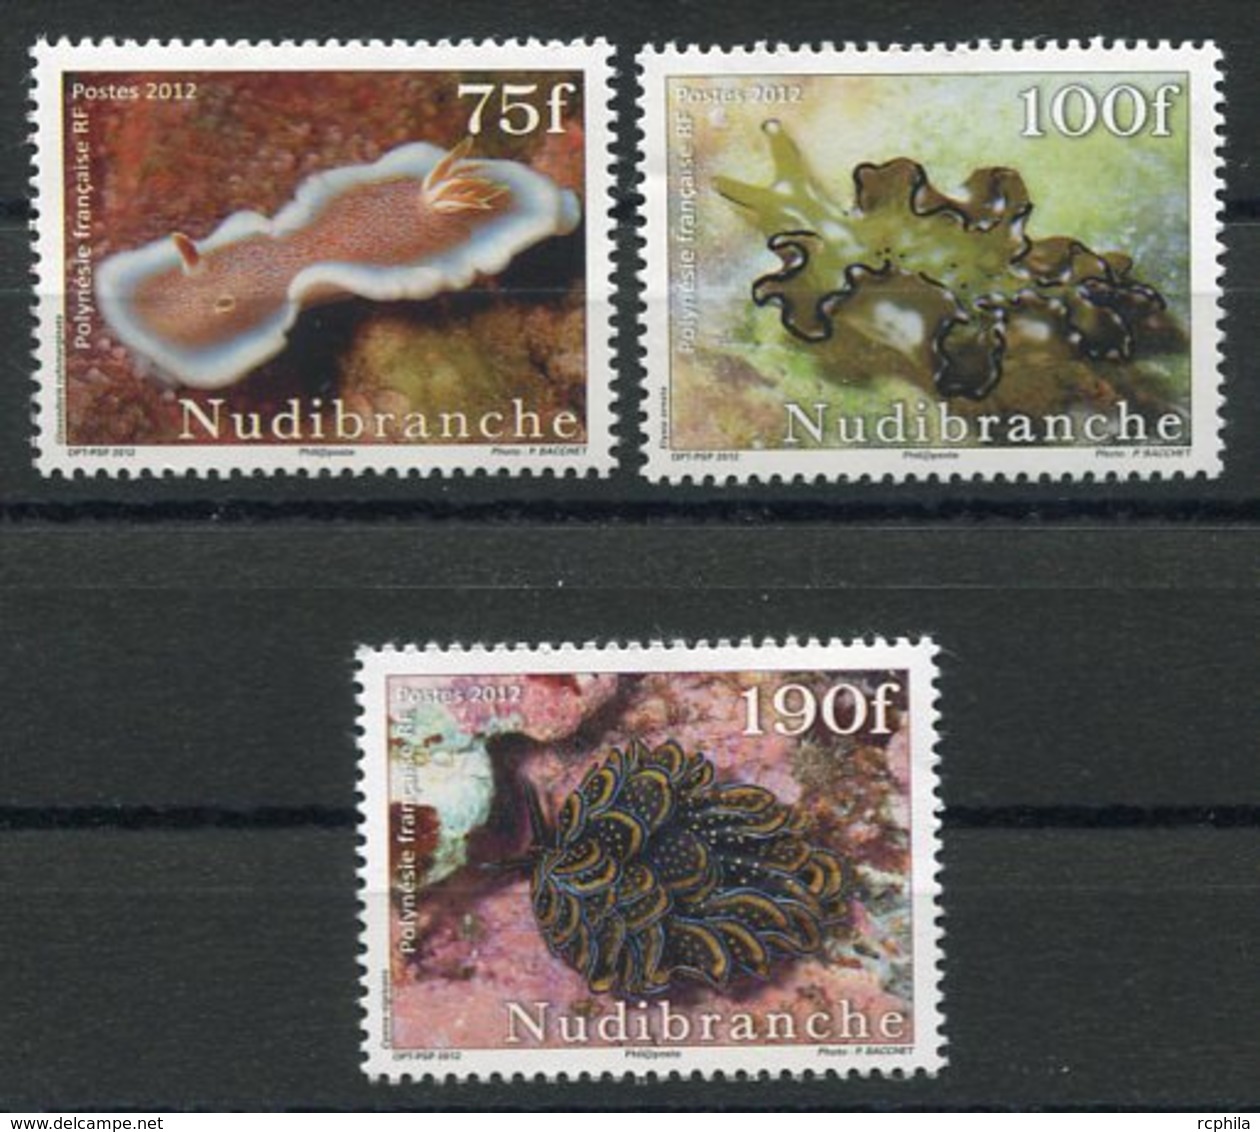 RC 12716 POLYNÉSIE N° 991 / 993 SÉRIE FAUNE MARINE NEUF ** - Unused Stamps